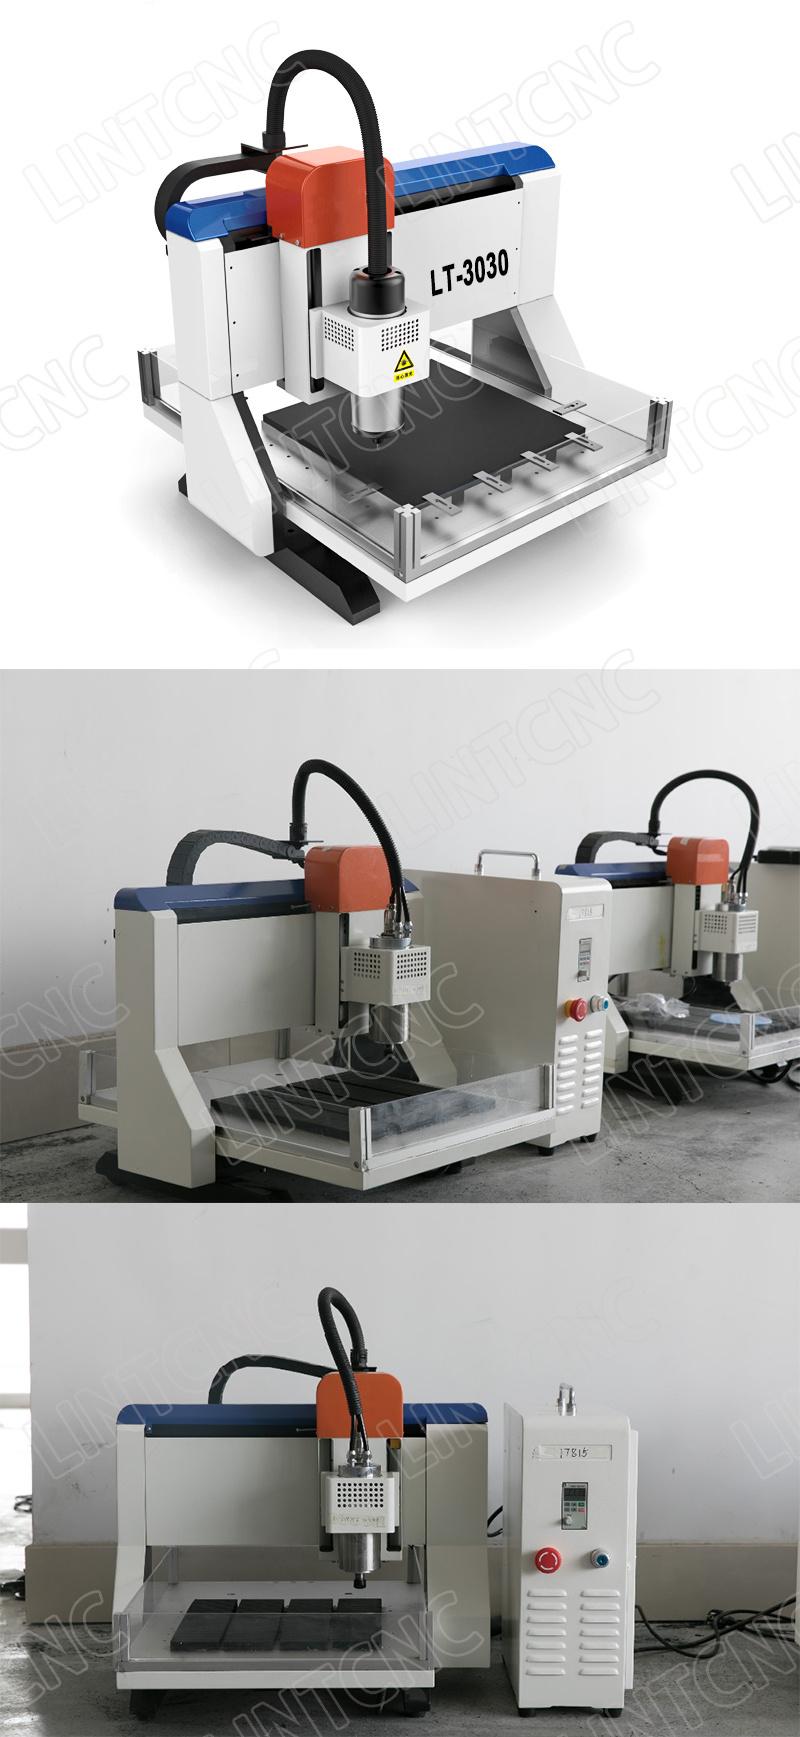 Desktop T-Slot Table Stone Engraving 3D 3030 DSP Mach3 Mini Metal Relief CNC Router